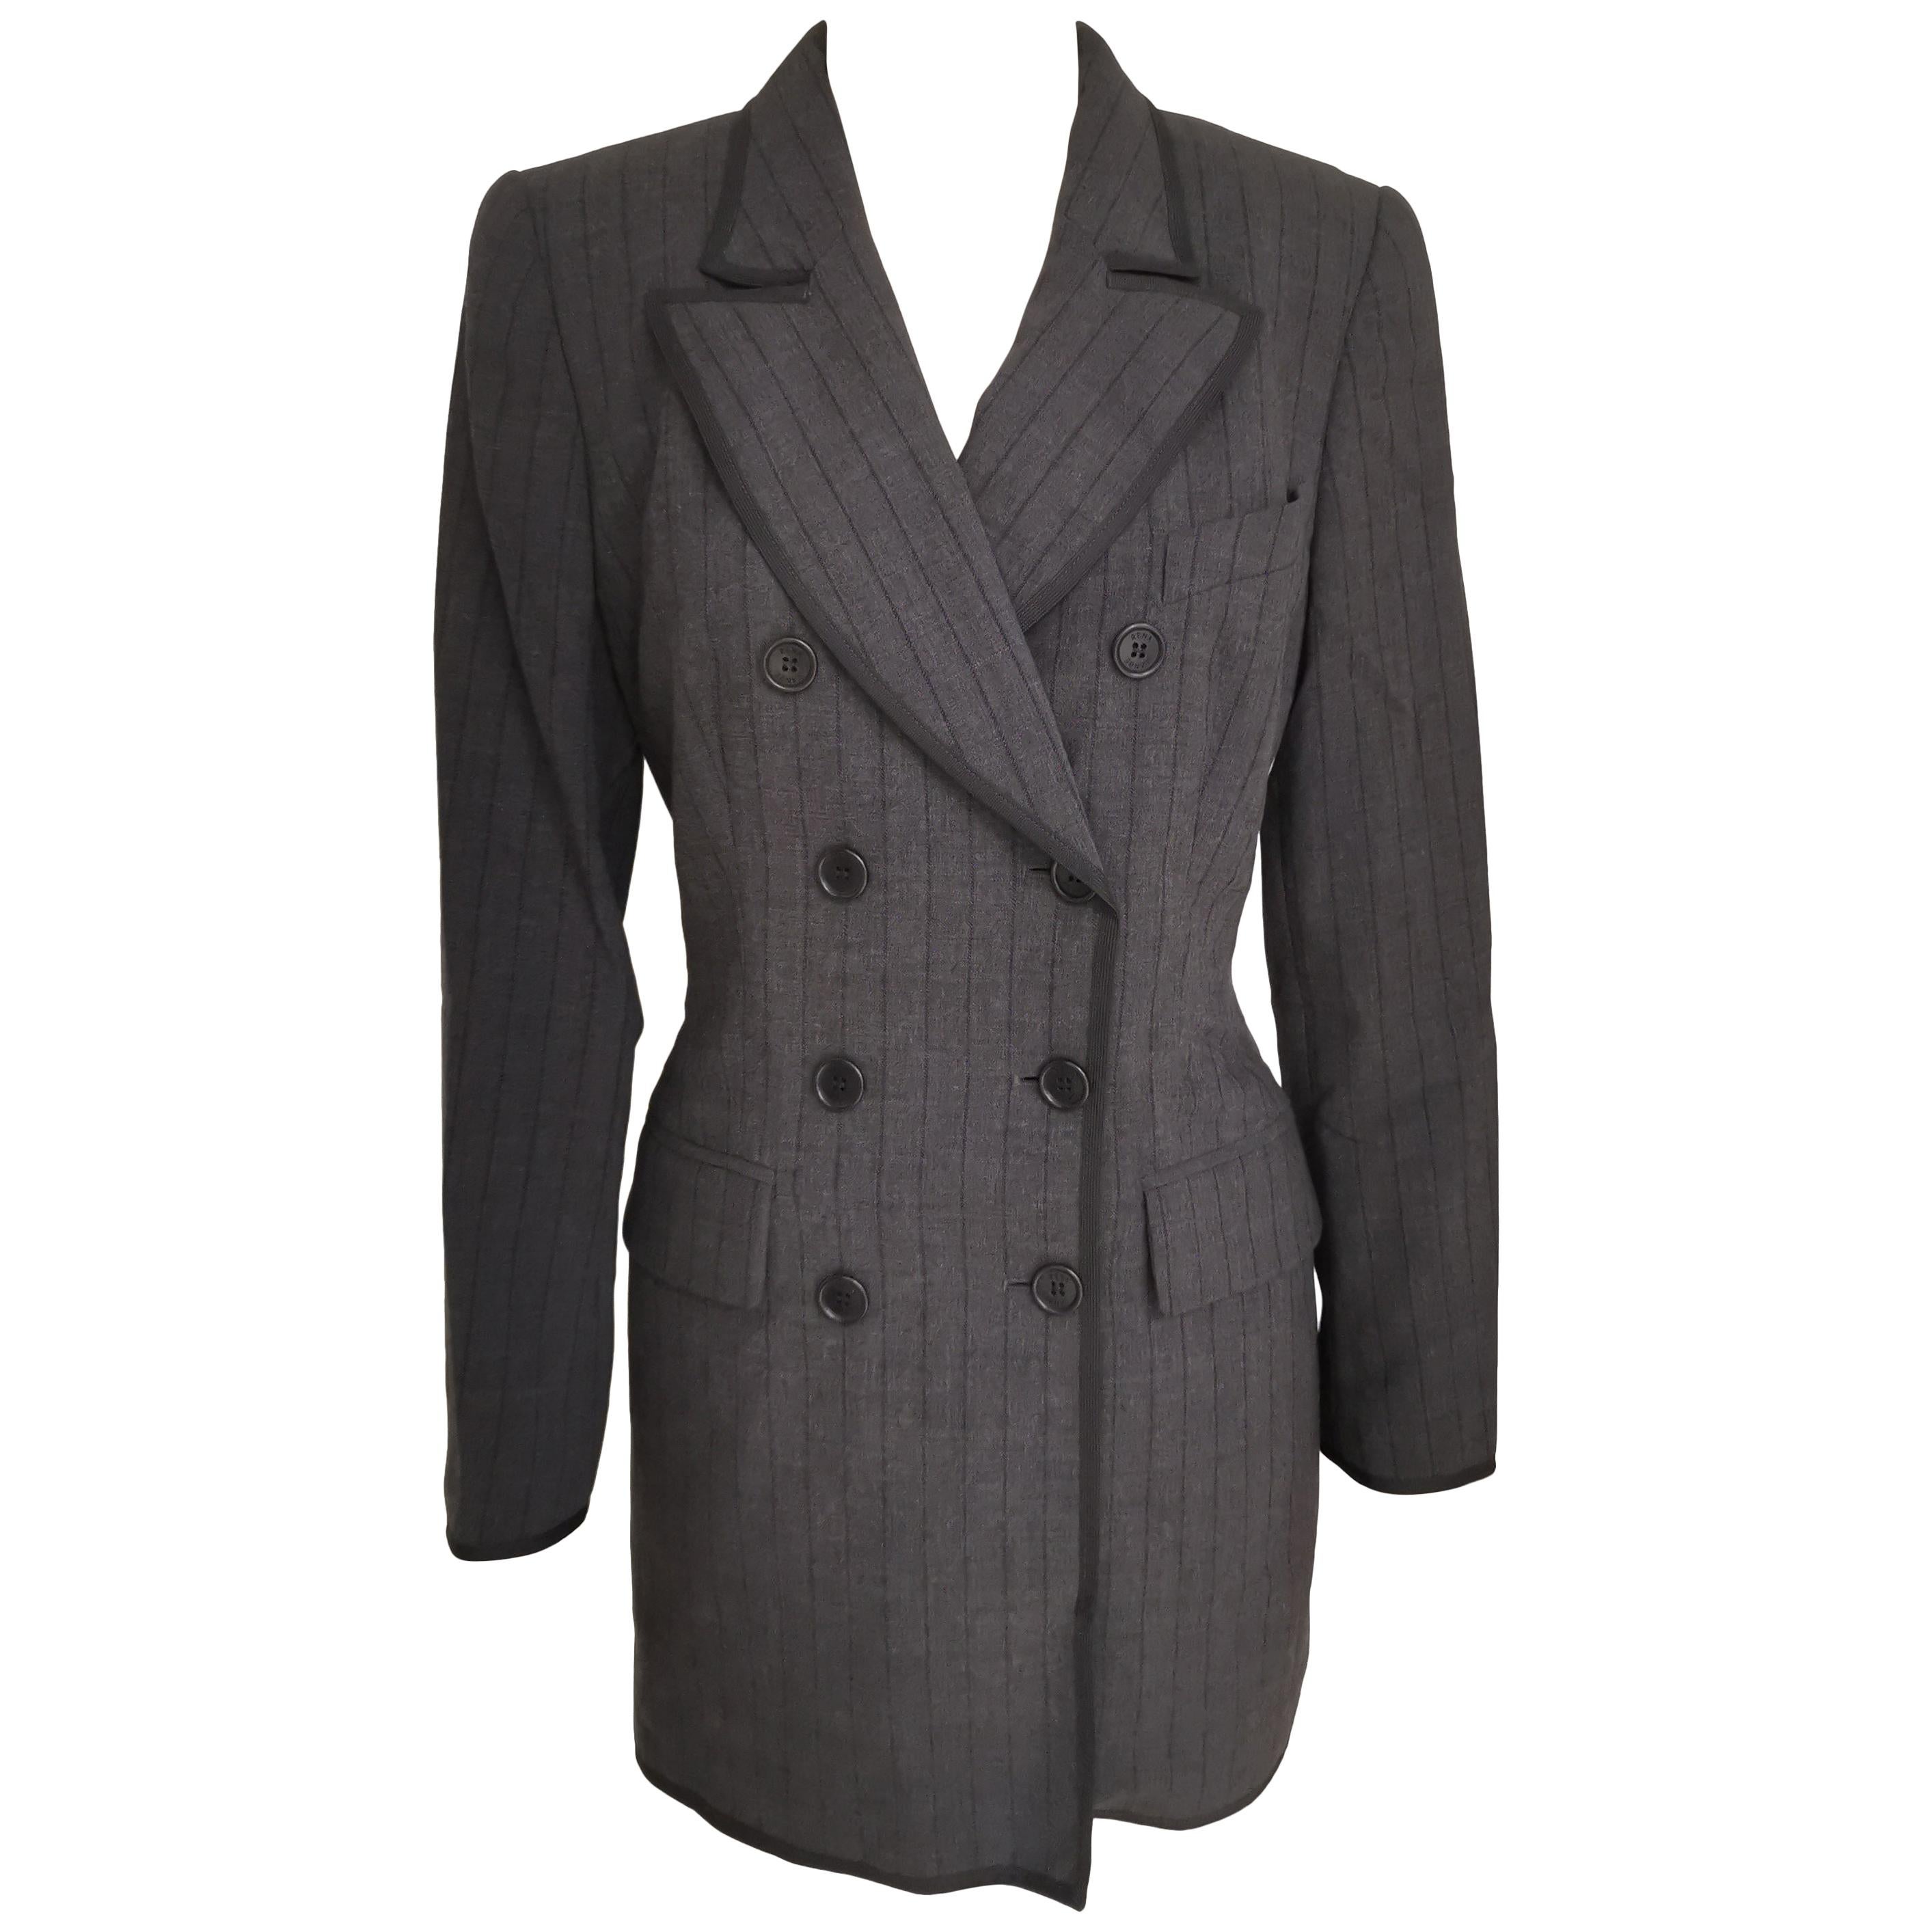 Rena Lange wool grey blazer jacket NWOT